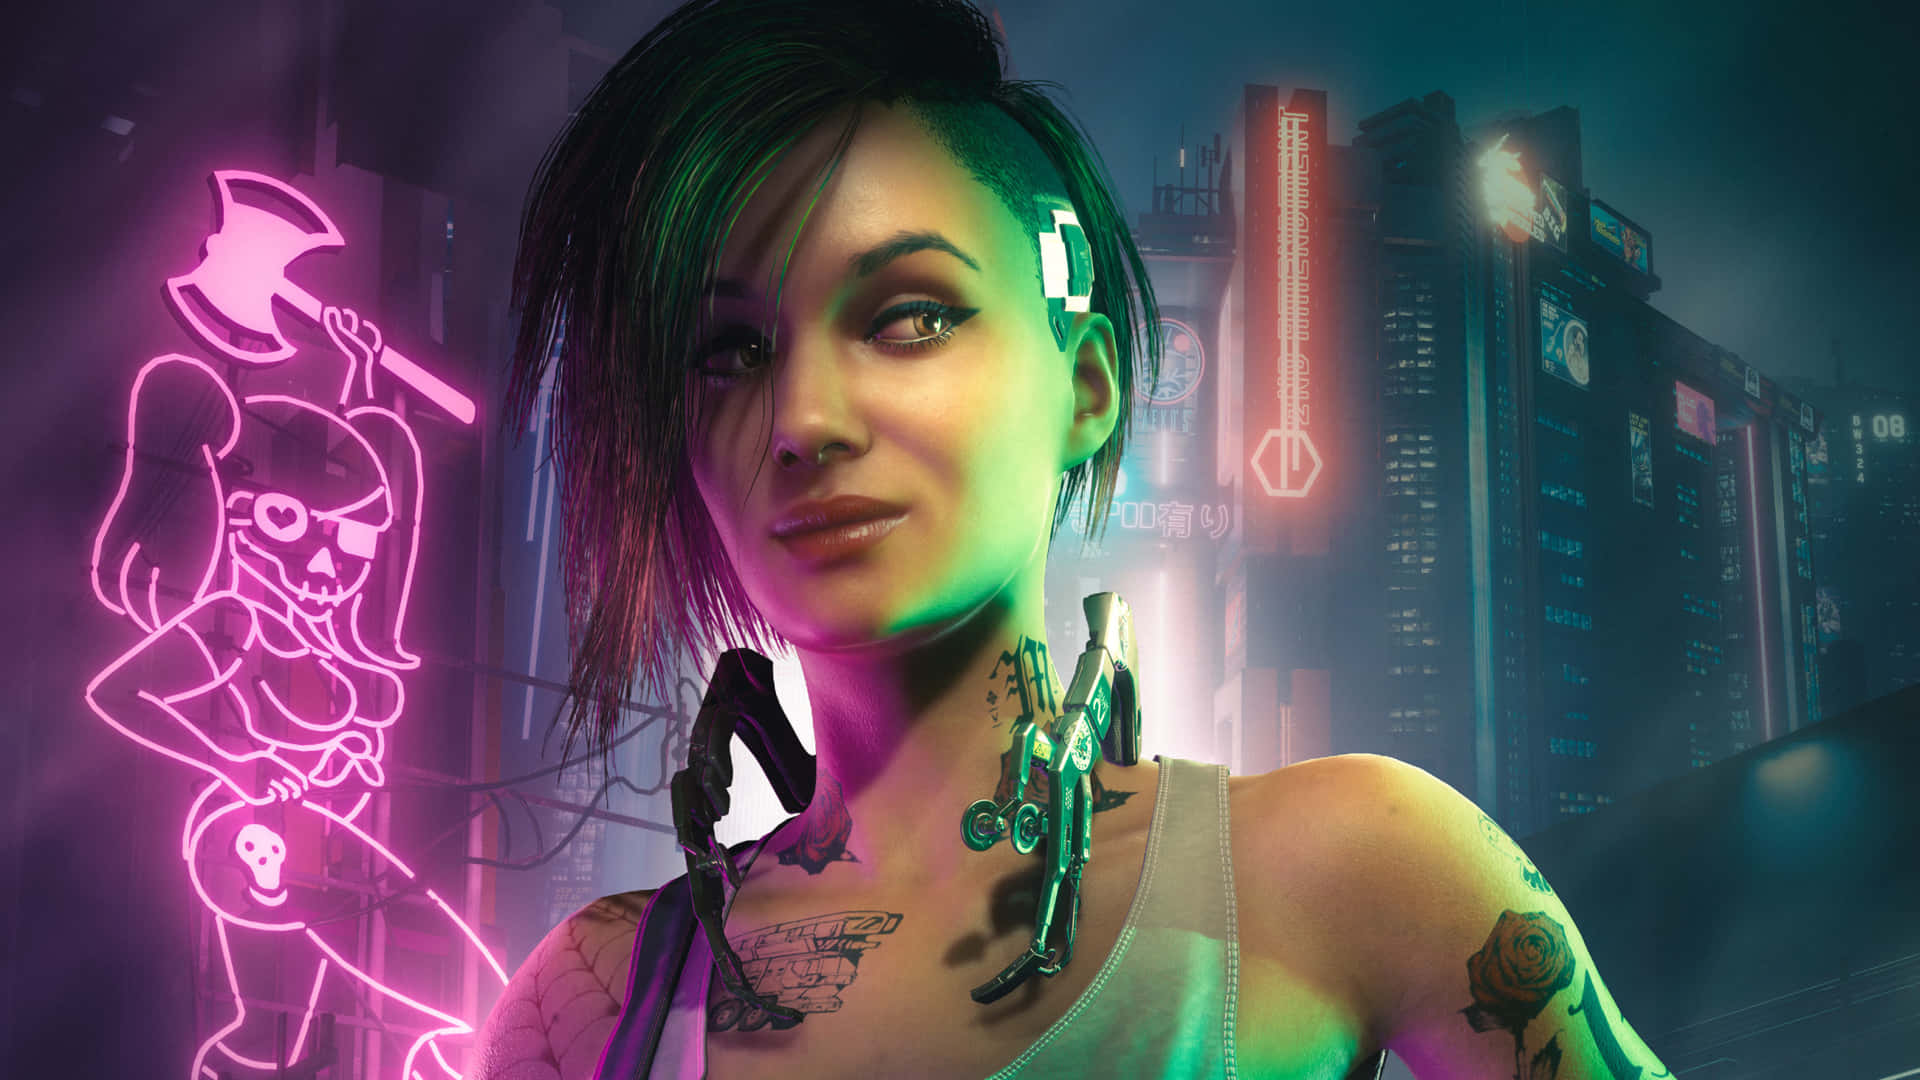 Judyalvarez Hintergrund Für 1440p Cyberpunk 2077